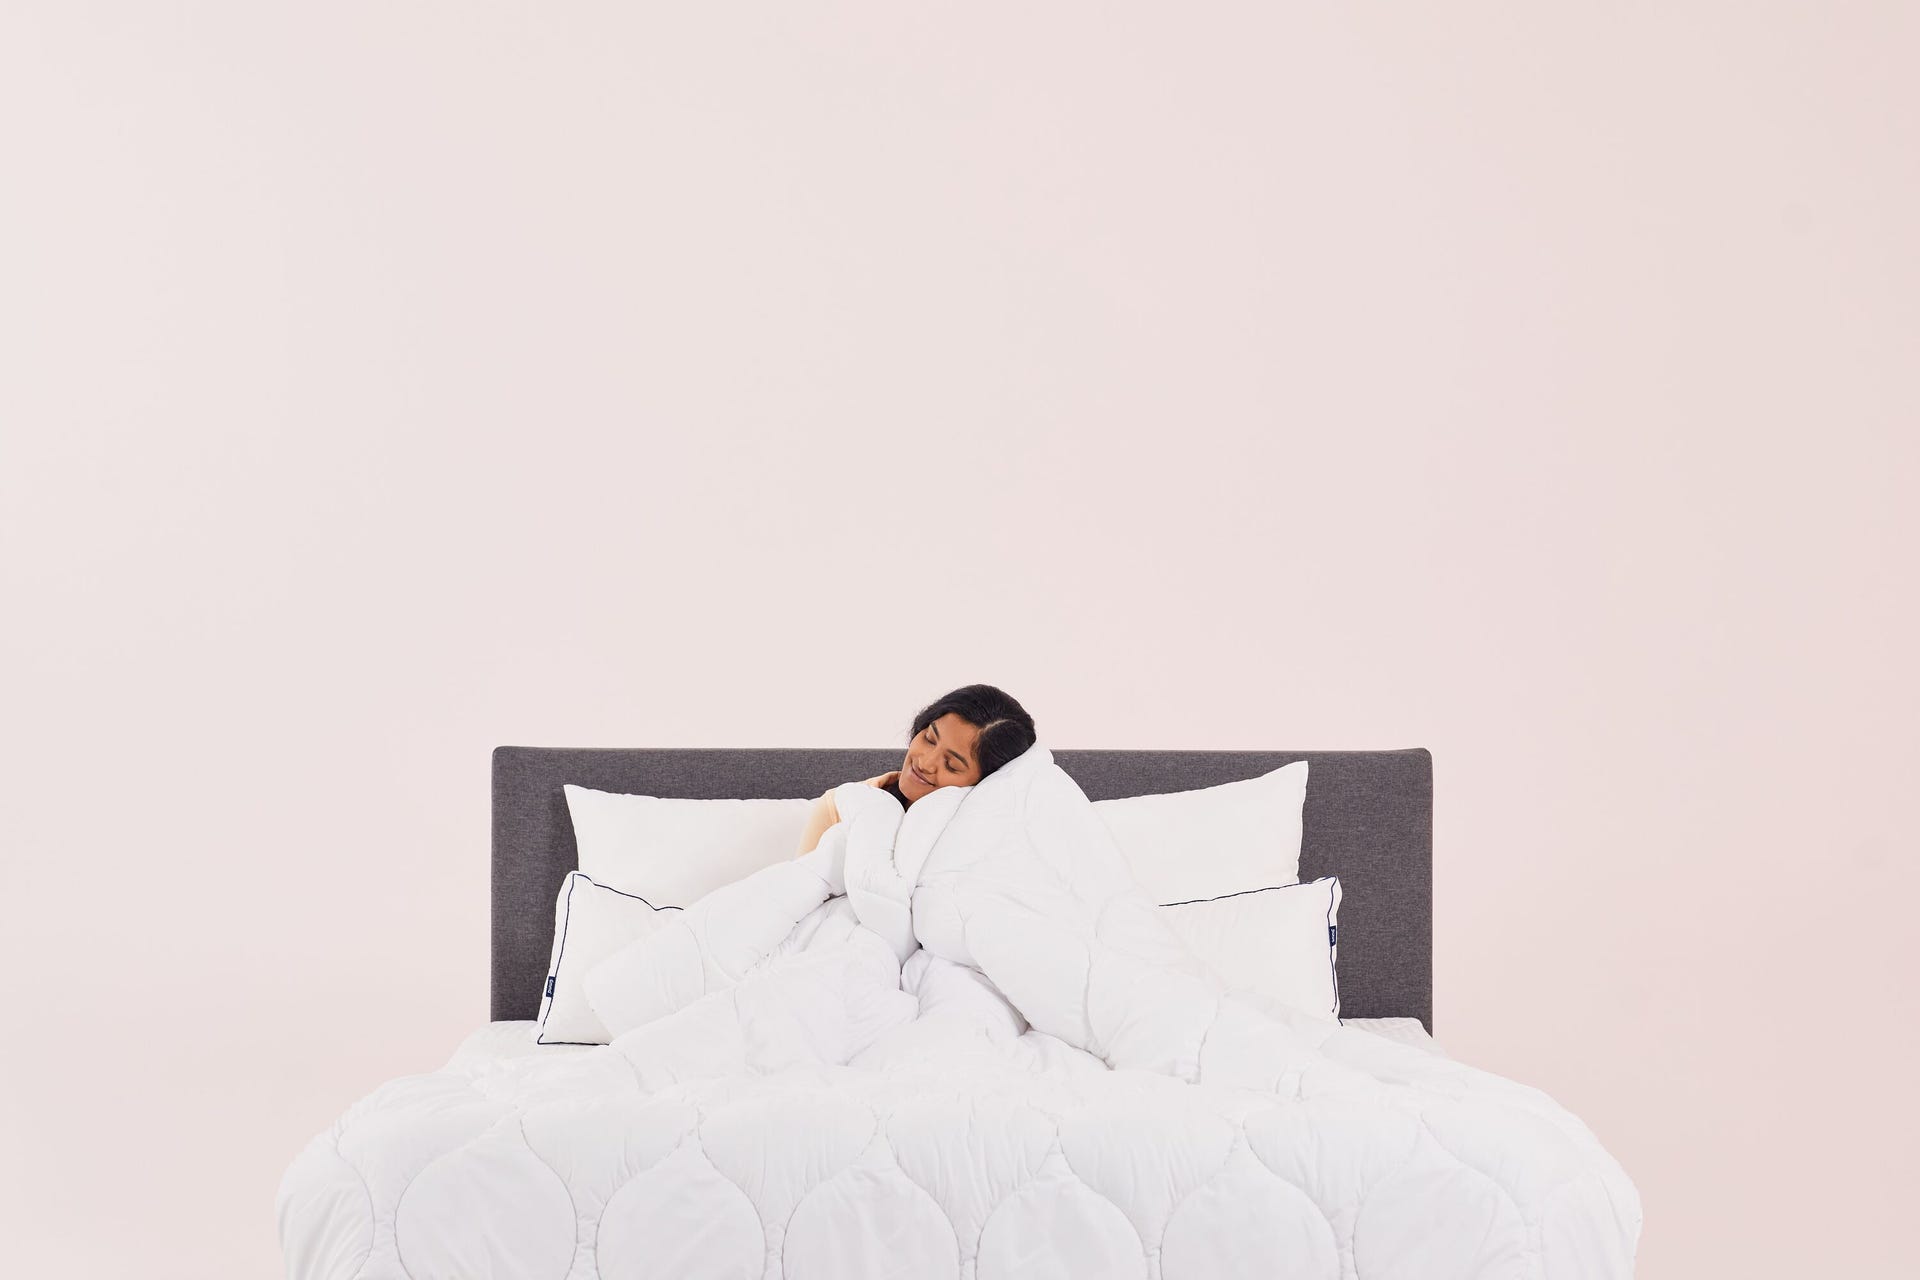 una chica sentada en la cama abraza un edredon blanco